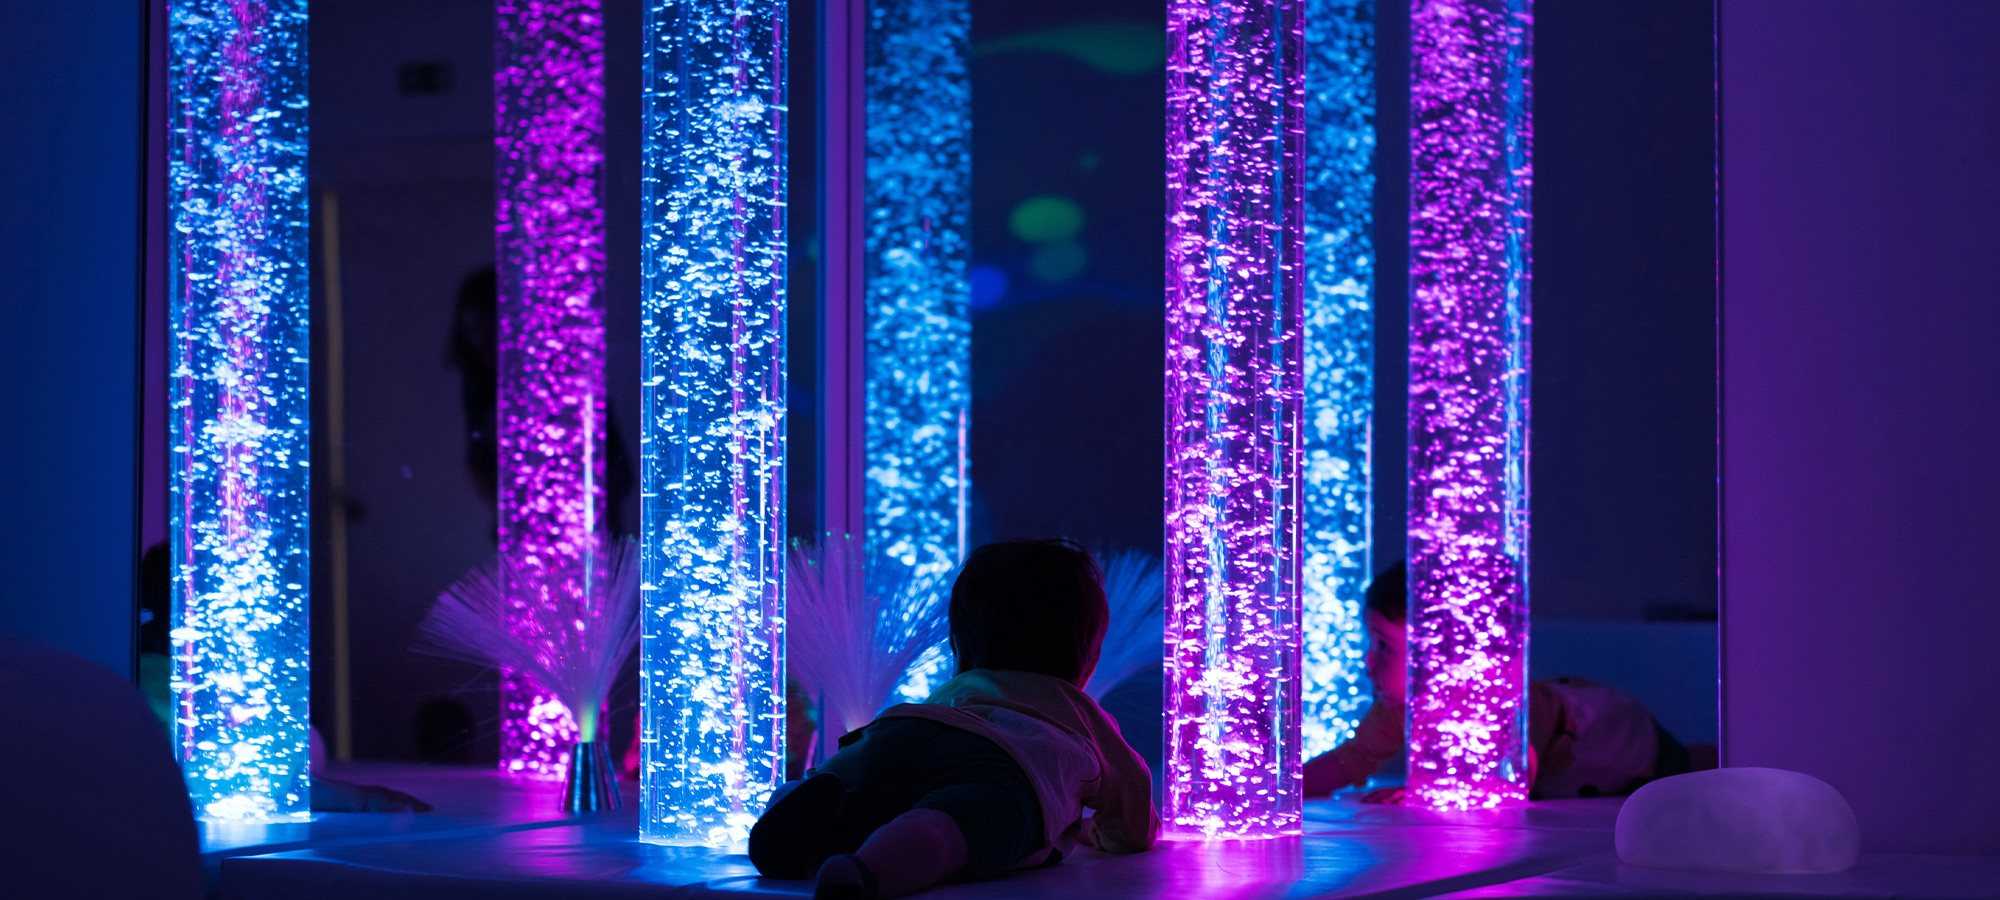 Un enfant à plat ventre regarde des tubes à bulles dans une salle multisensorielle